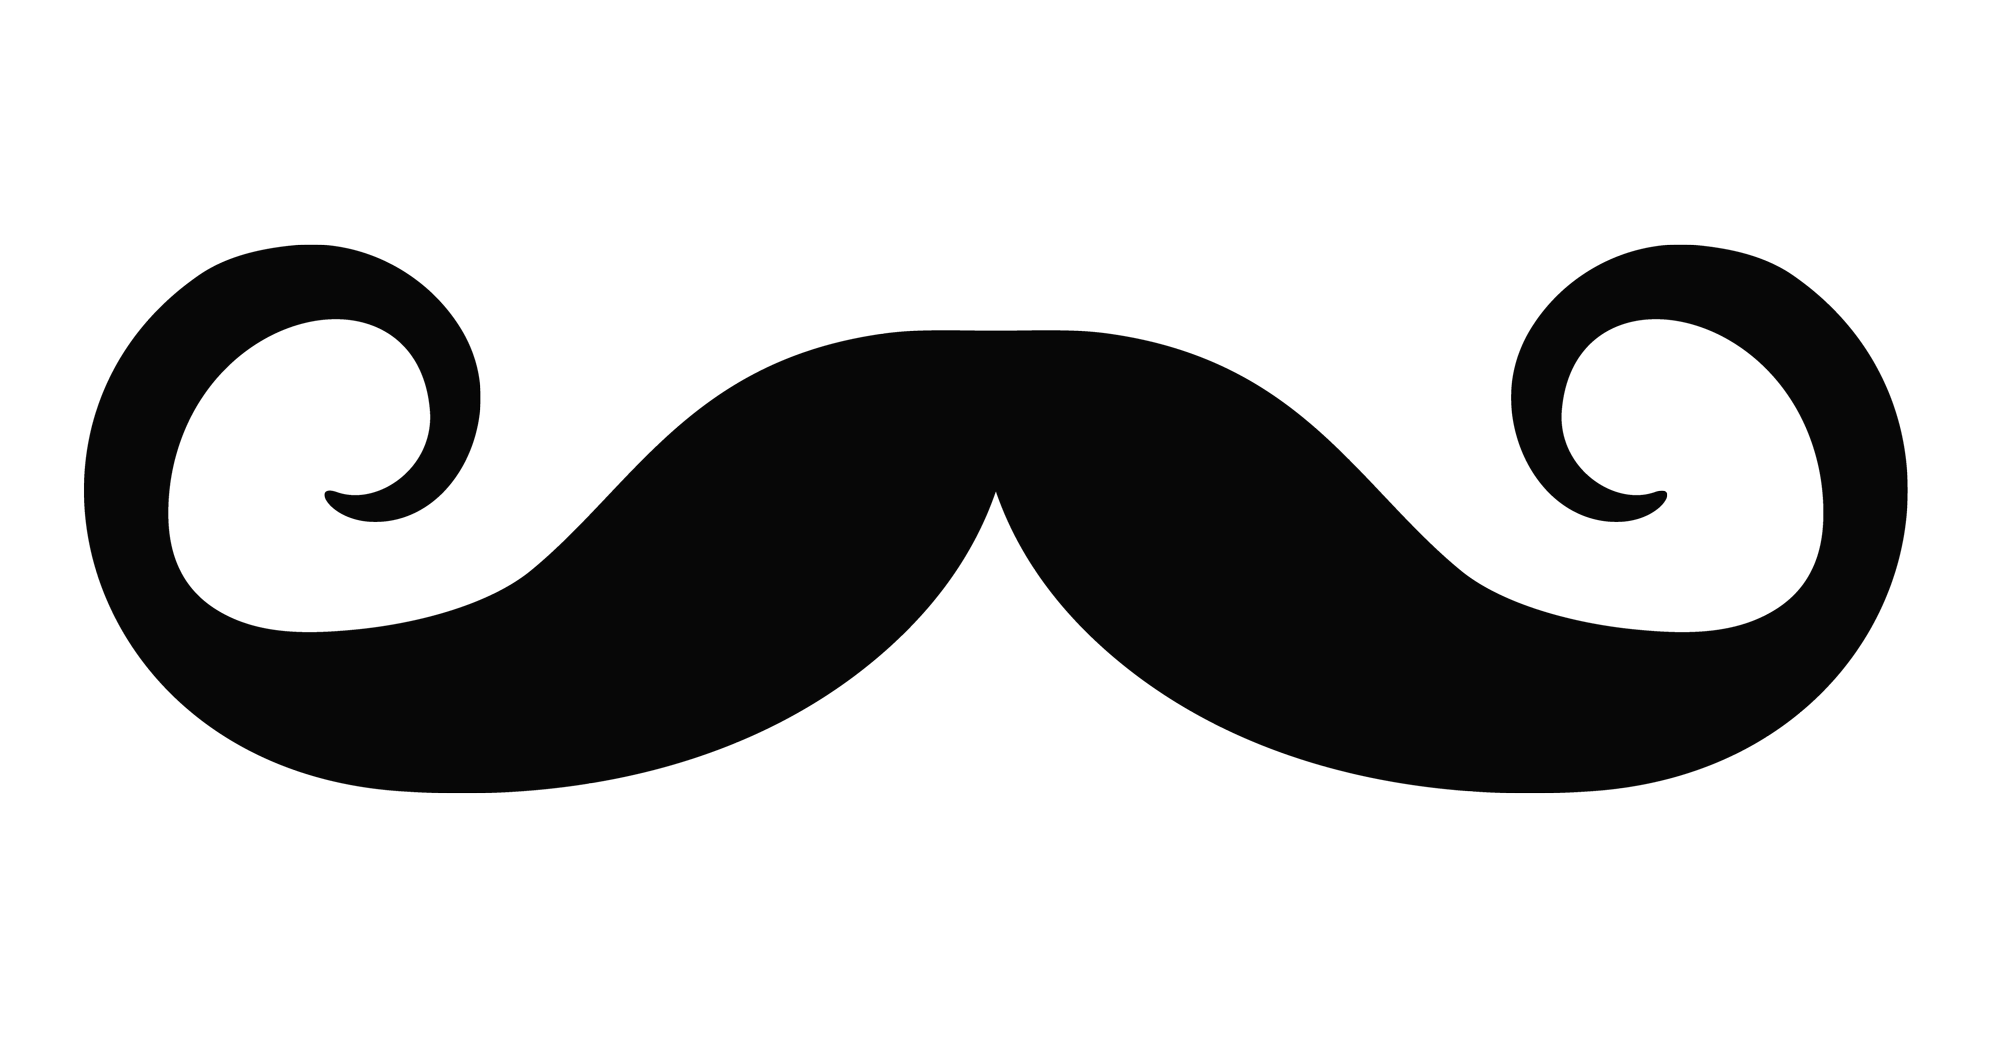 mustache png transparent